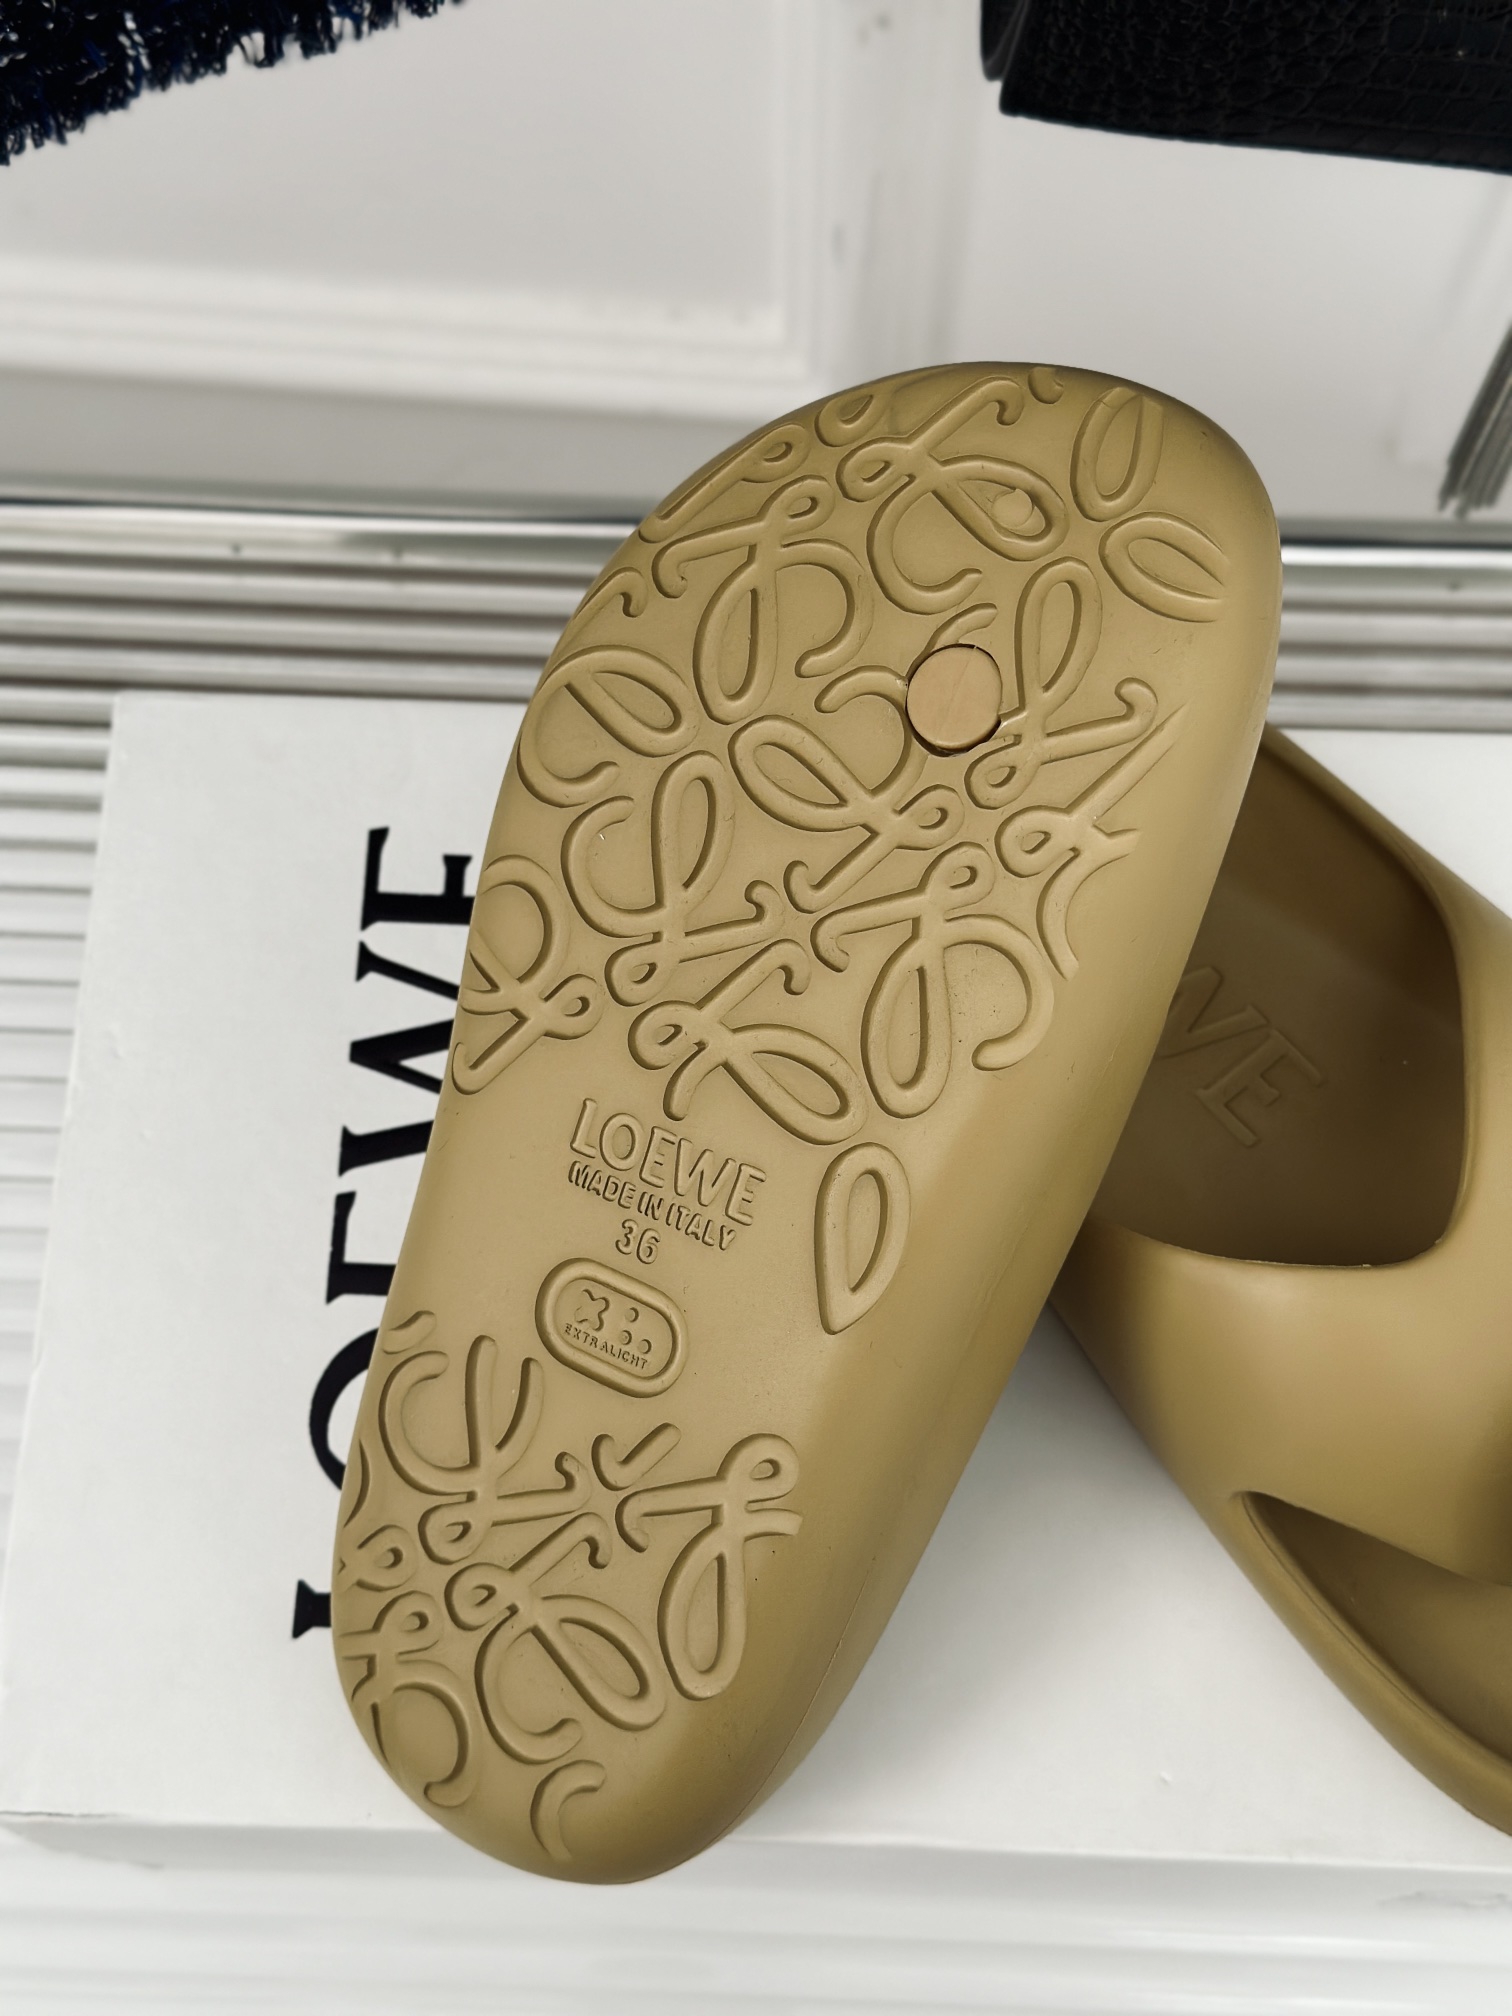 Loewe/罗意威24s新品面包夹脚人字拖鞋duangduang的拖鞋糖果色的“马卡龙”胖乎乎的好可爱轻